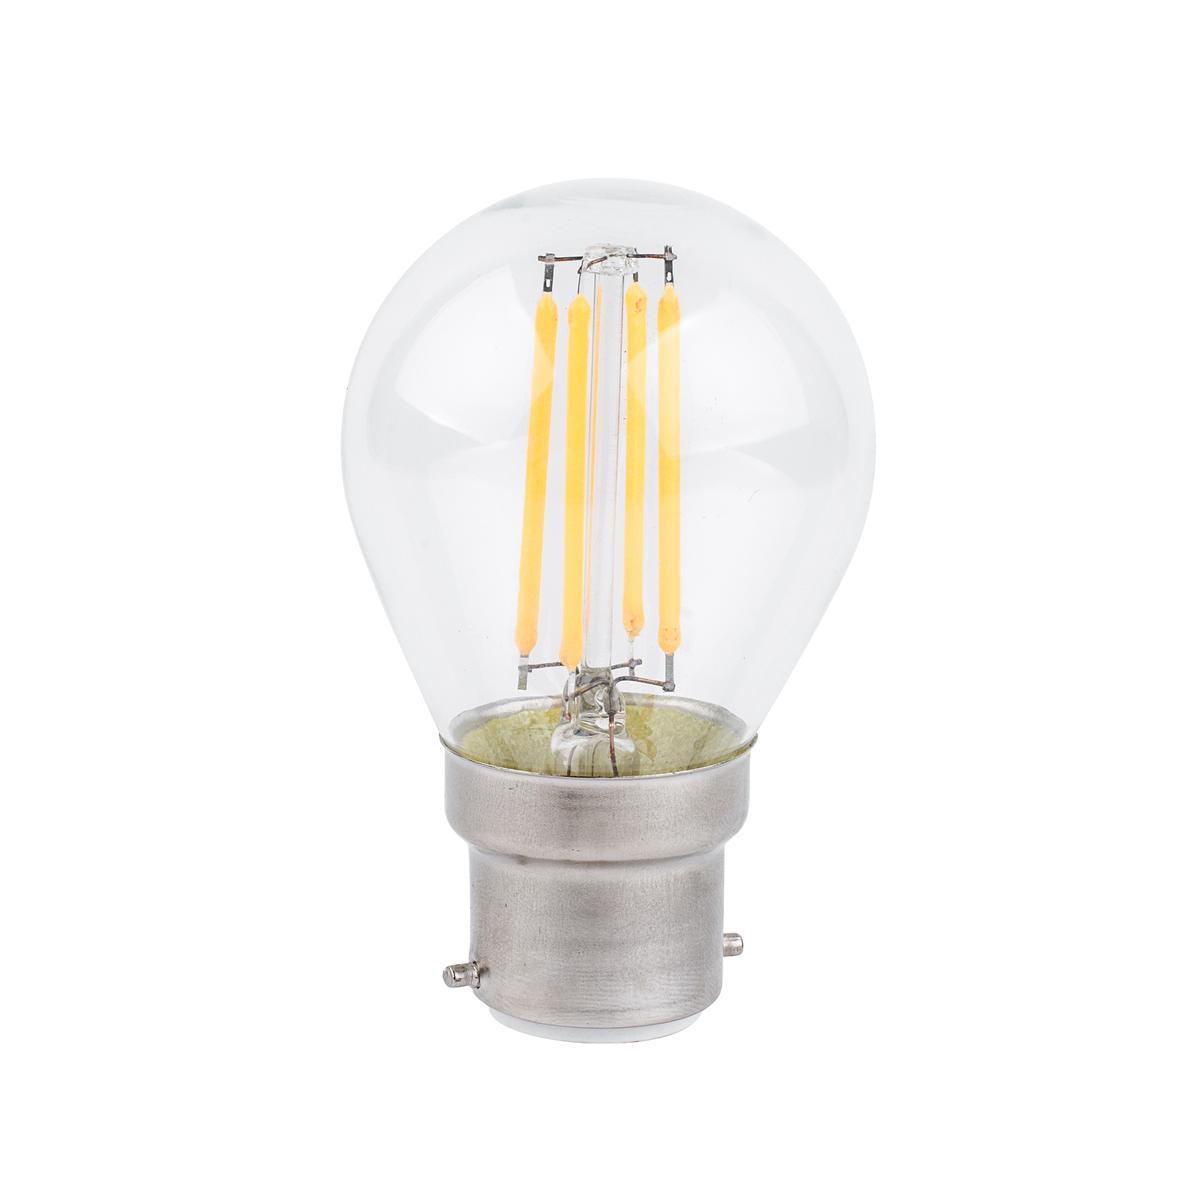 Ampoule à filaments LED G45 B22 - 400 LM - Transparent, blanc chaud